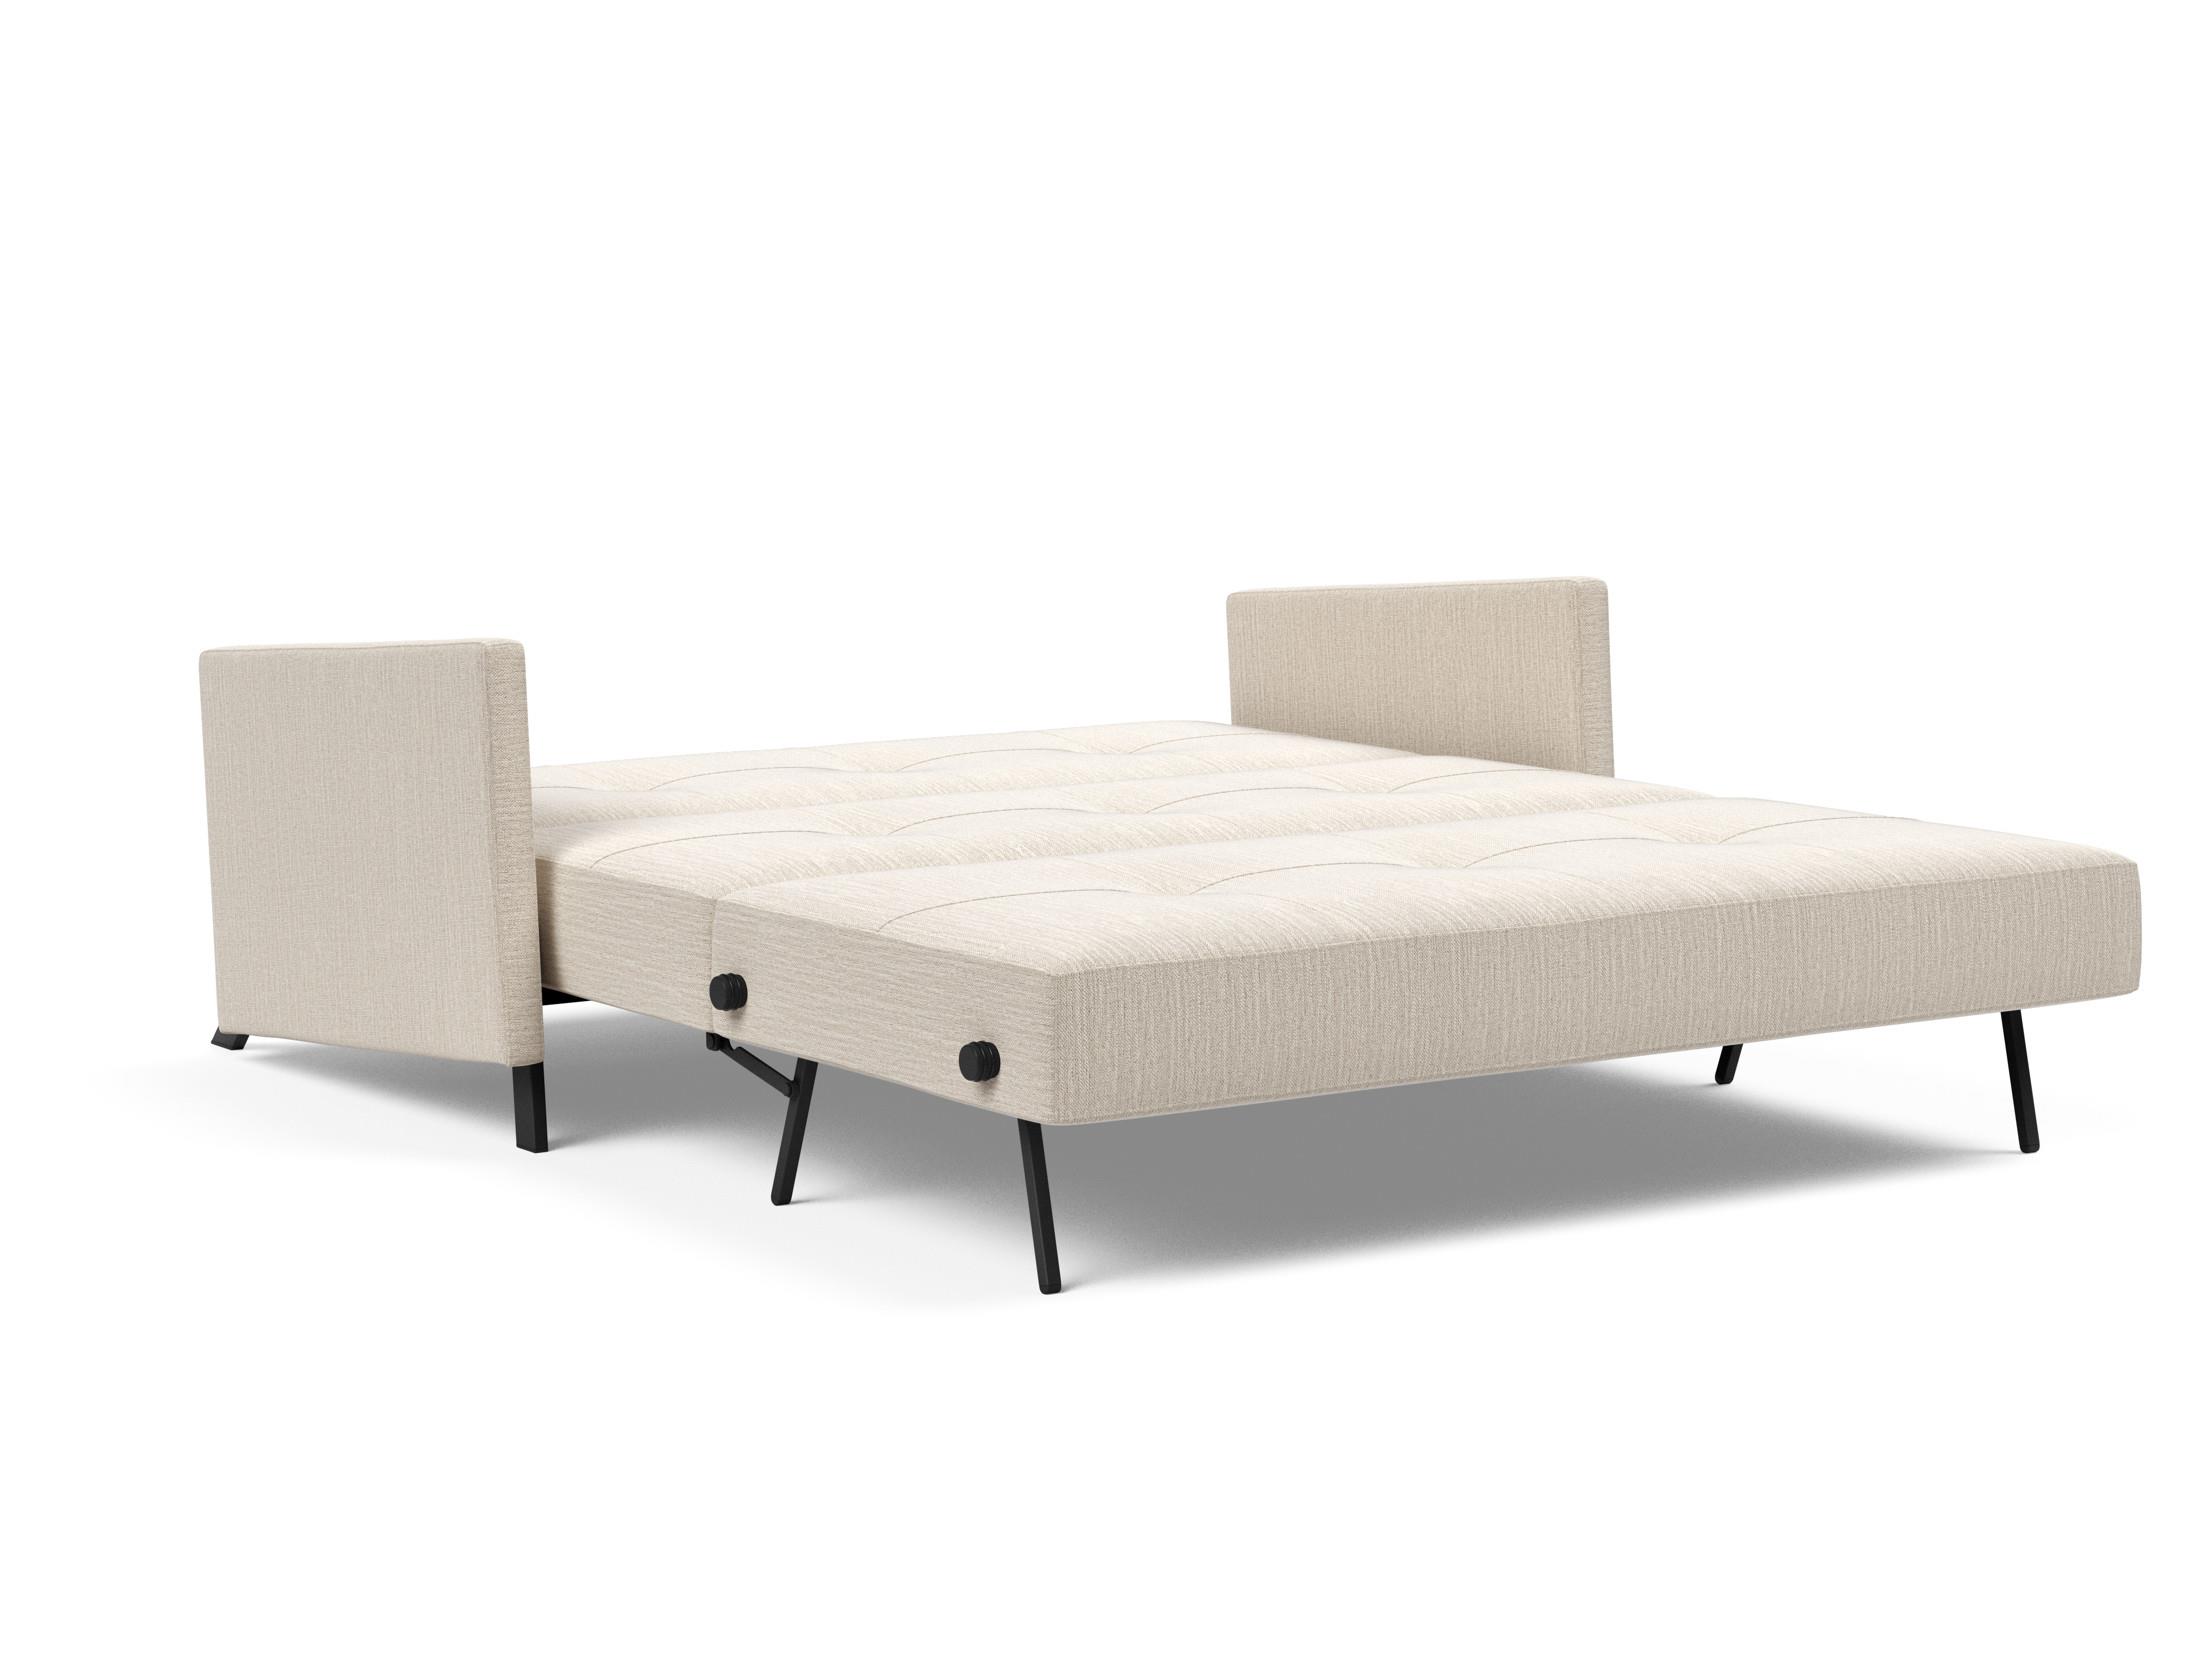 Кресло-кровать Cubed 90 Innovation. Диван sofa140 200. Кровать кубик. Кровать Cube Design. Cubed 140